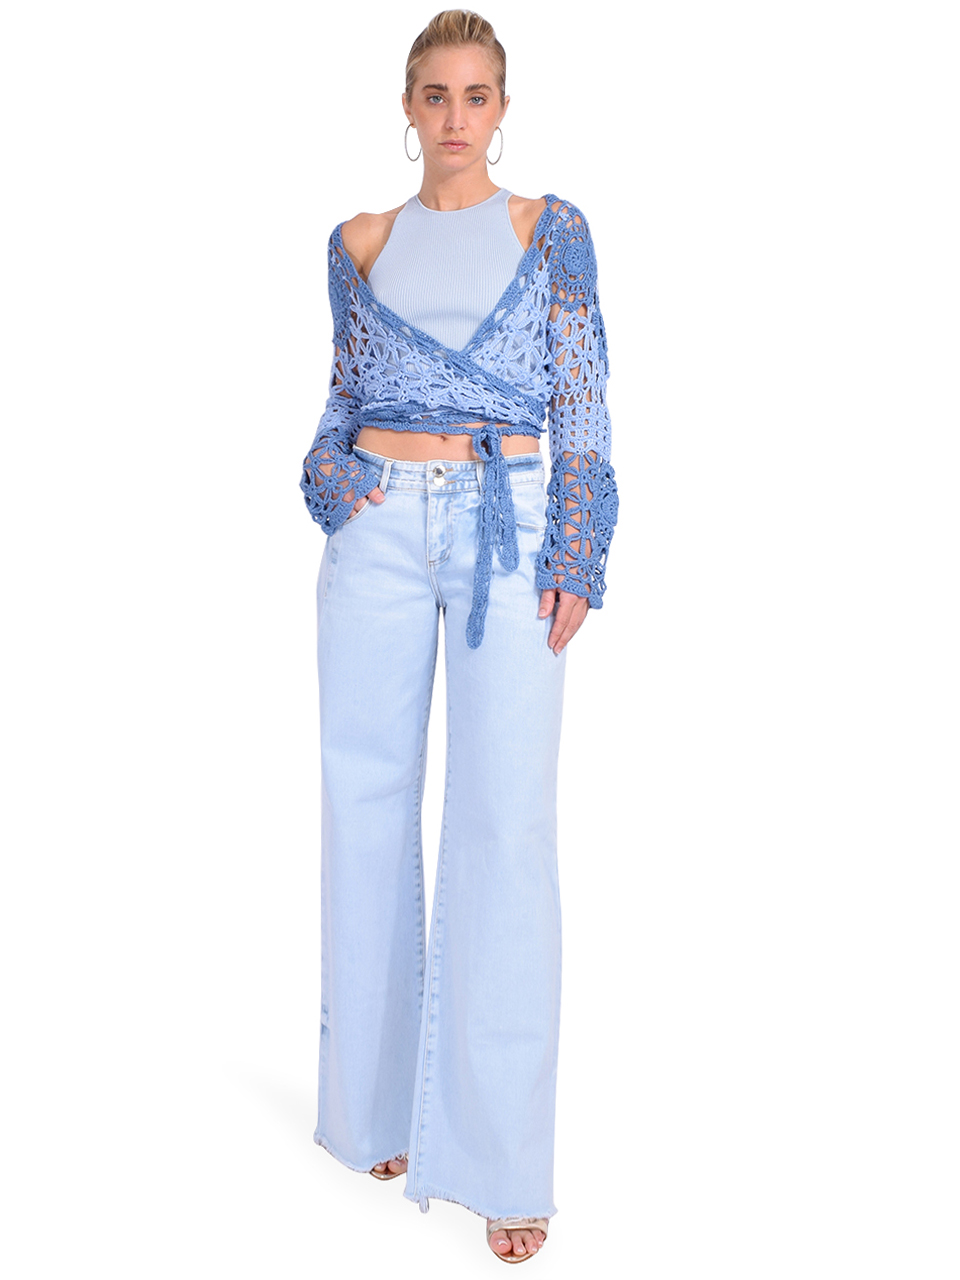 ALLISON Crochet Wrap Top in Blue Multi Full Outfit 